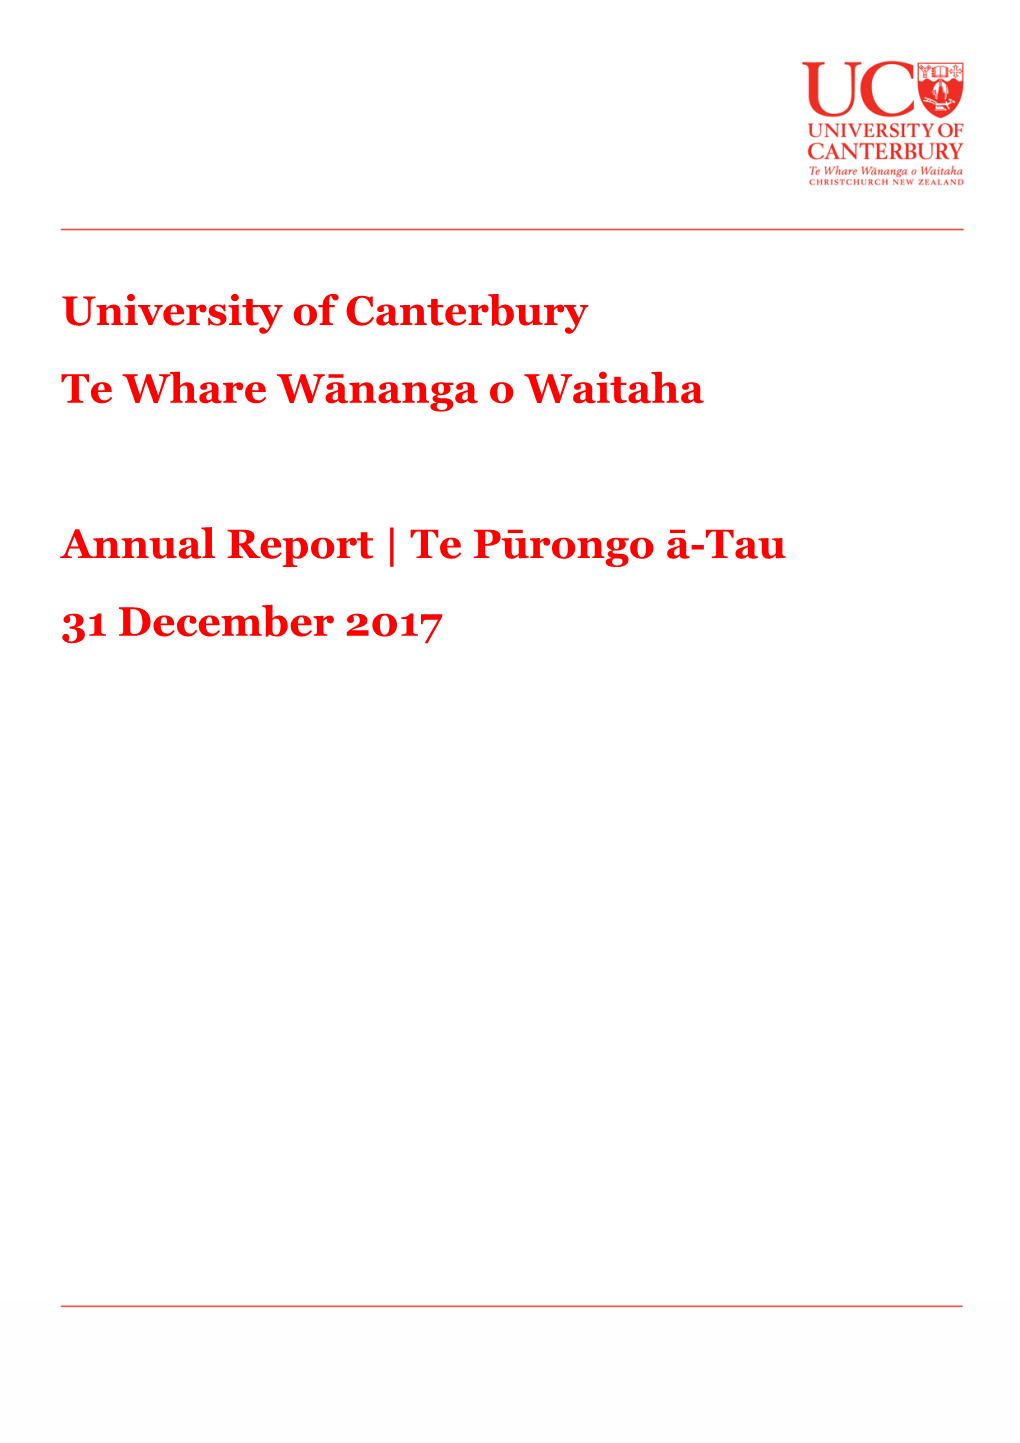 University of Canterbury Te Whare Wānanga O Waitaha